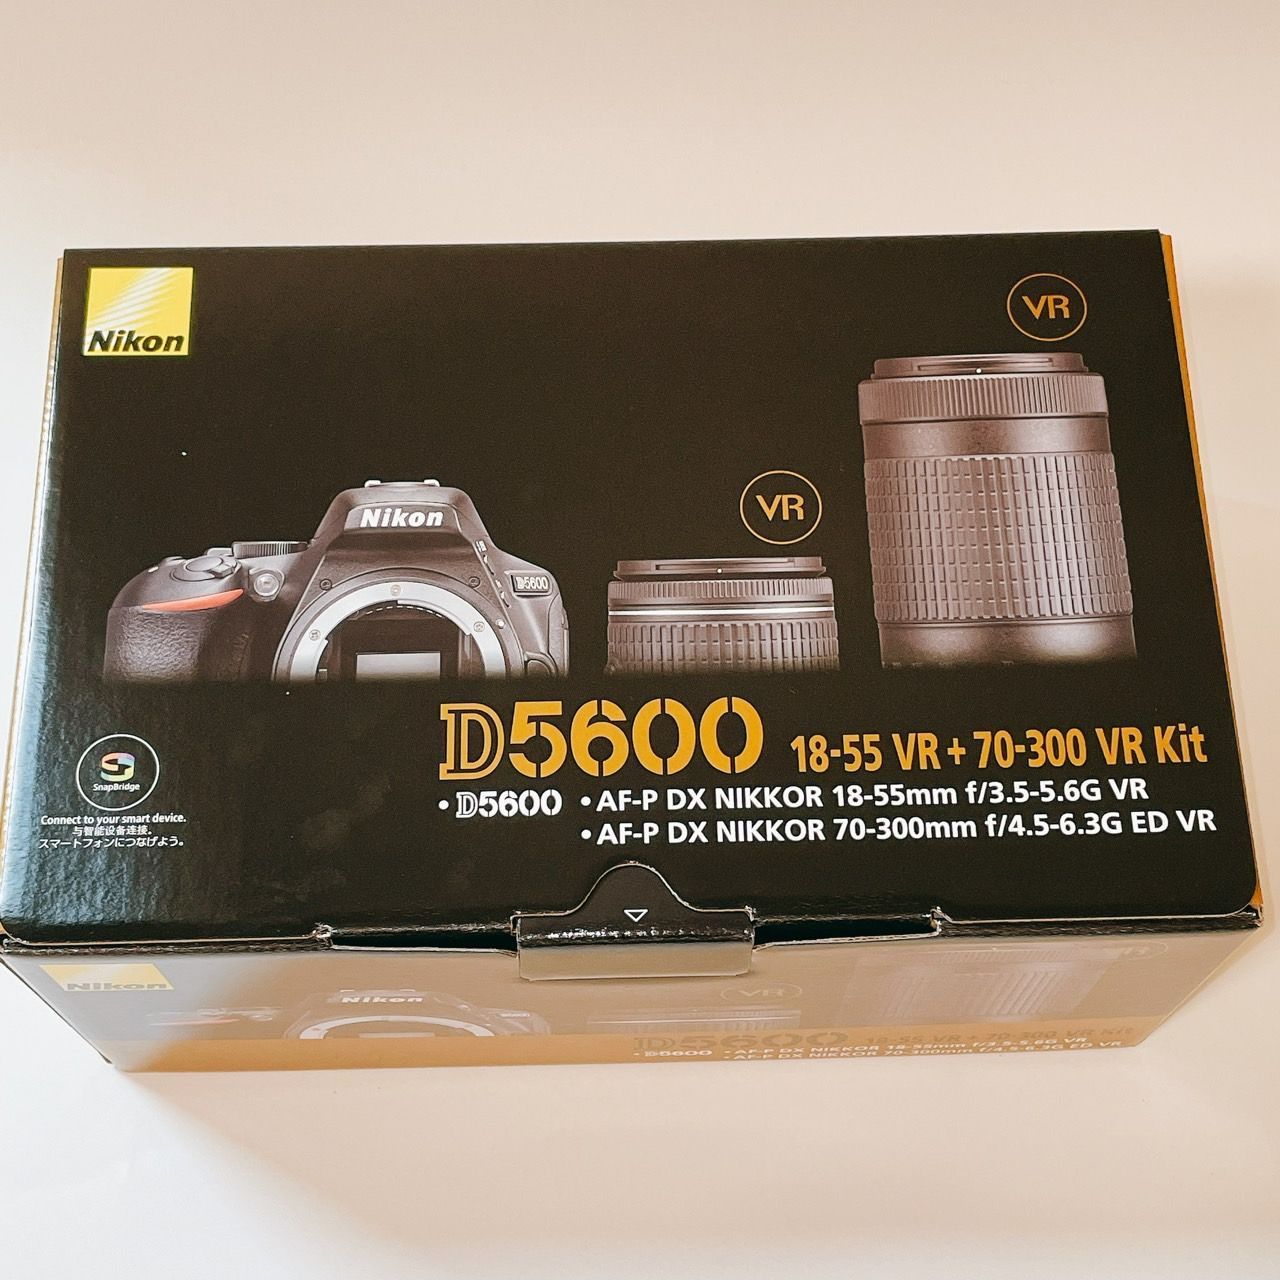 新品未開封 Nikon D5600 ダブルズームキット 3年安心サポート付き